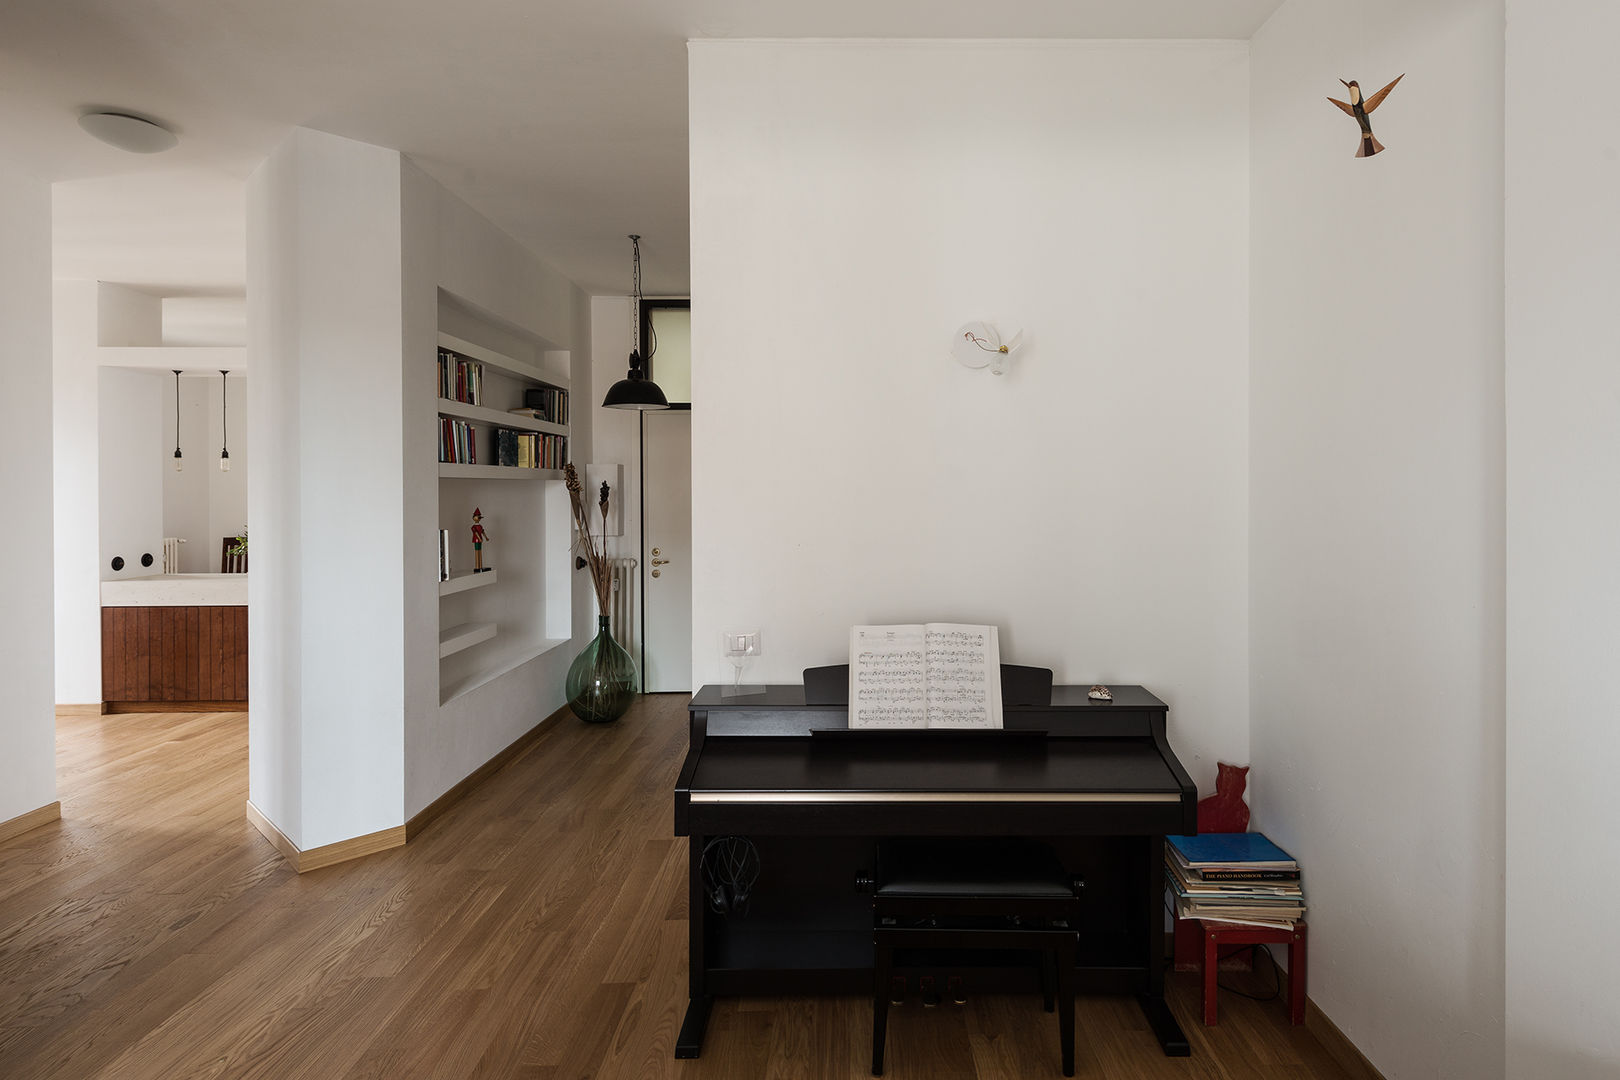 Woodboard House: Wohnungsrenovierung mit Charme, Atelier Blank Atelier Blank Corridor & hallway